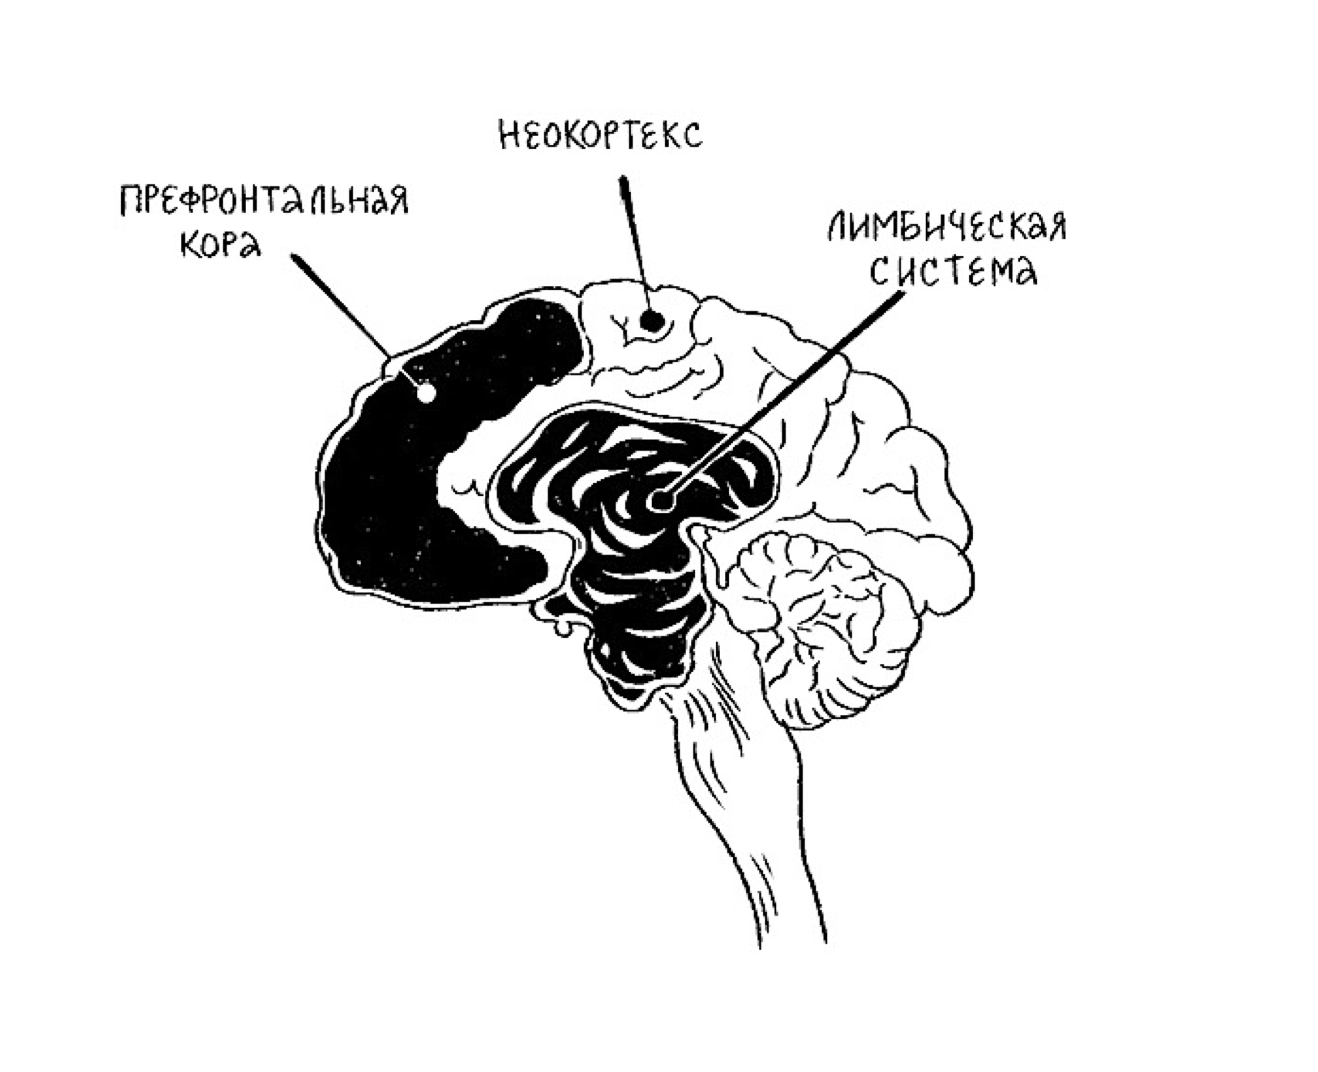 Лимбическая система и неокортекс мозга.